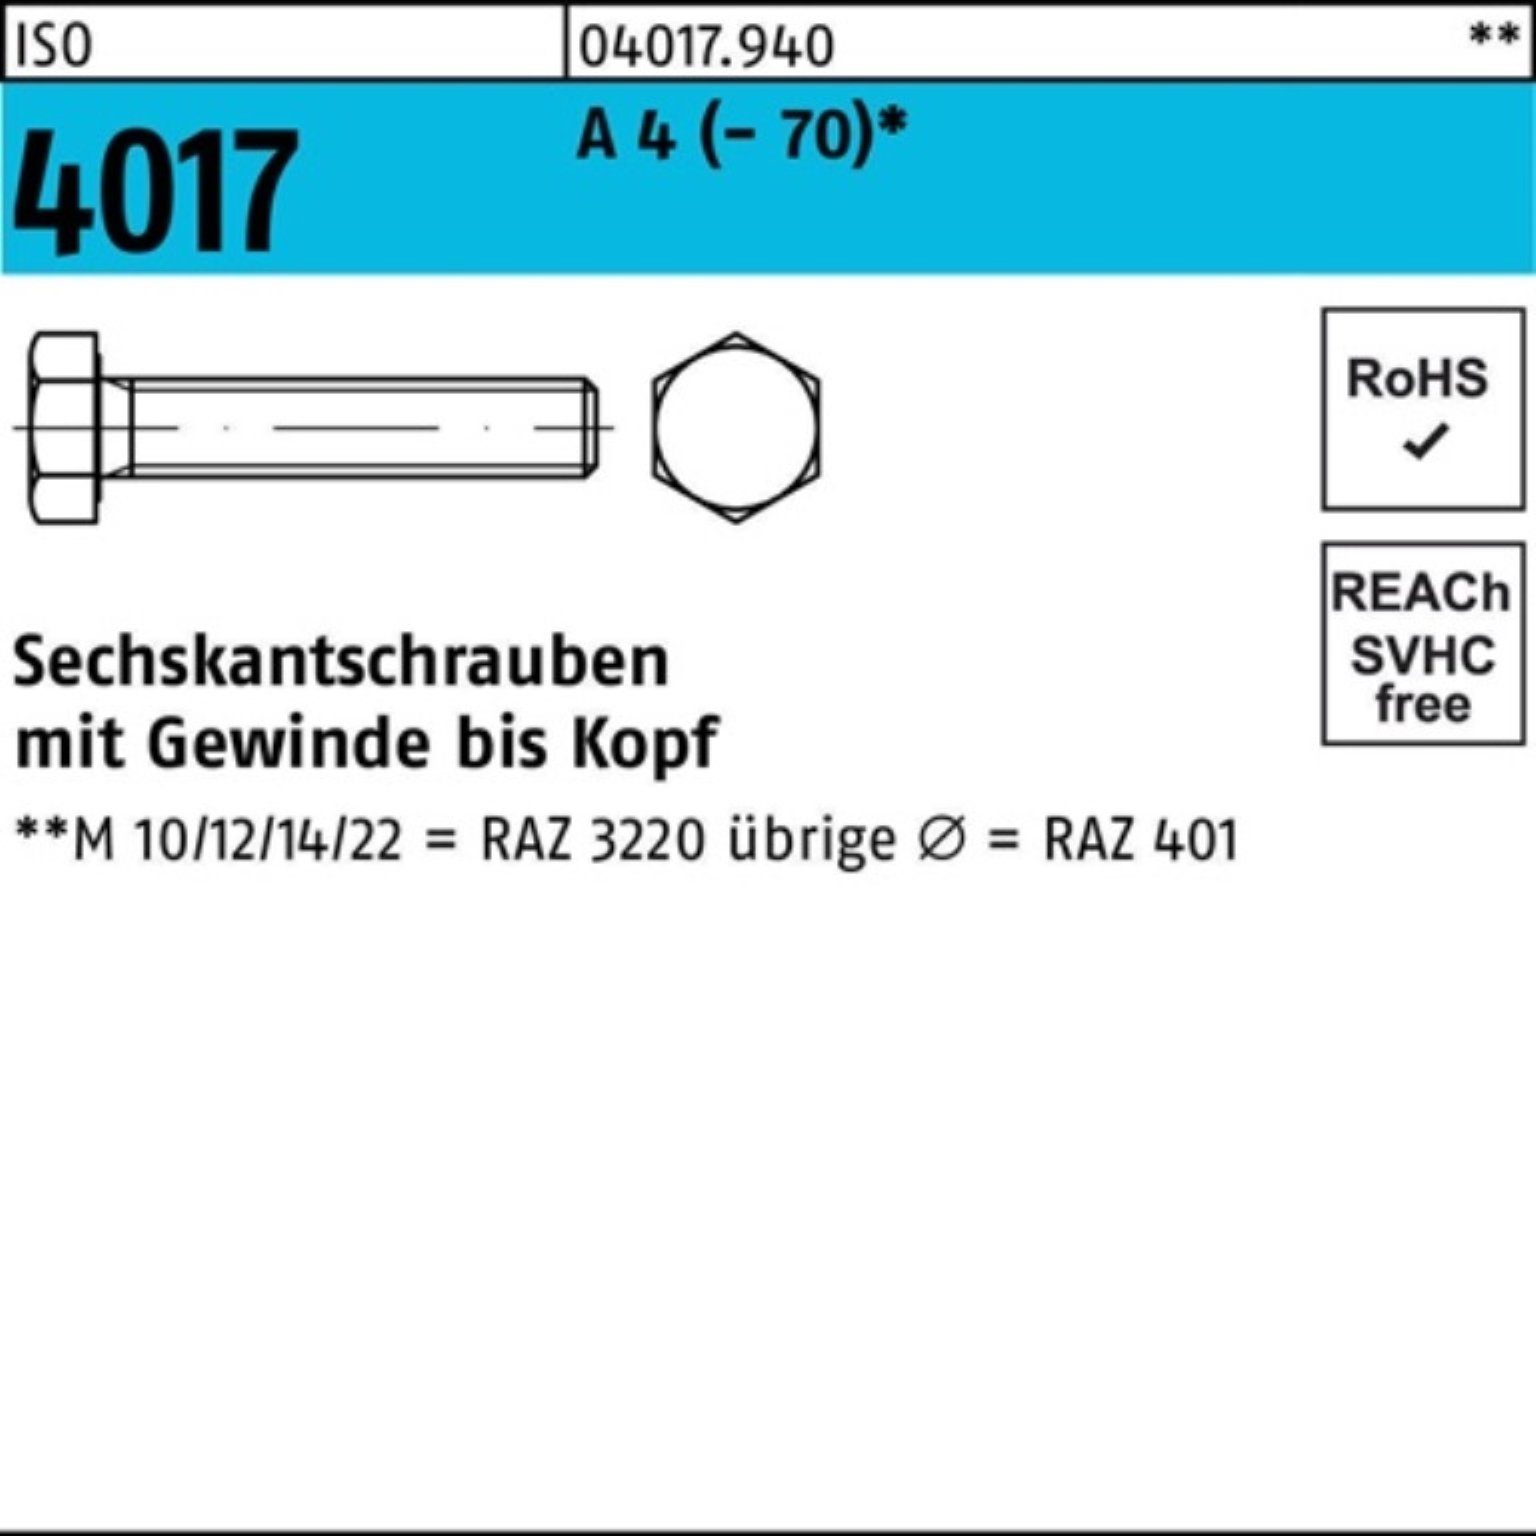 Bufab Sechskantschraube 100er Pack Sechskantschraube ISO 4017 VG M6x 65 A 4 (70) 50 Stück I